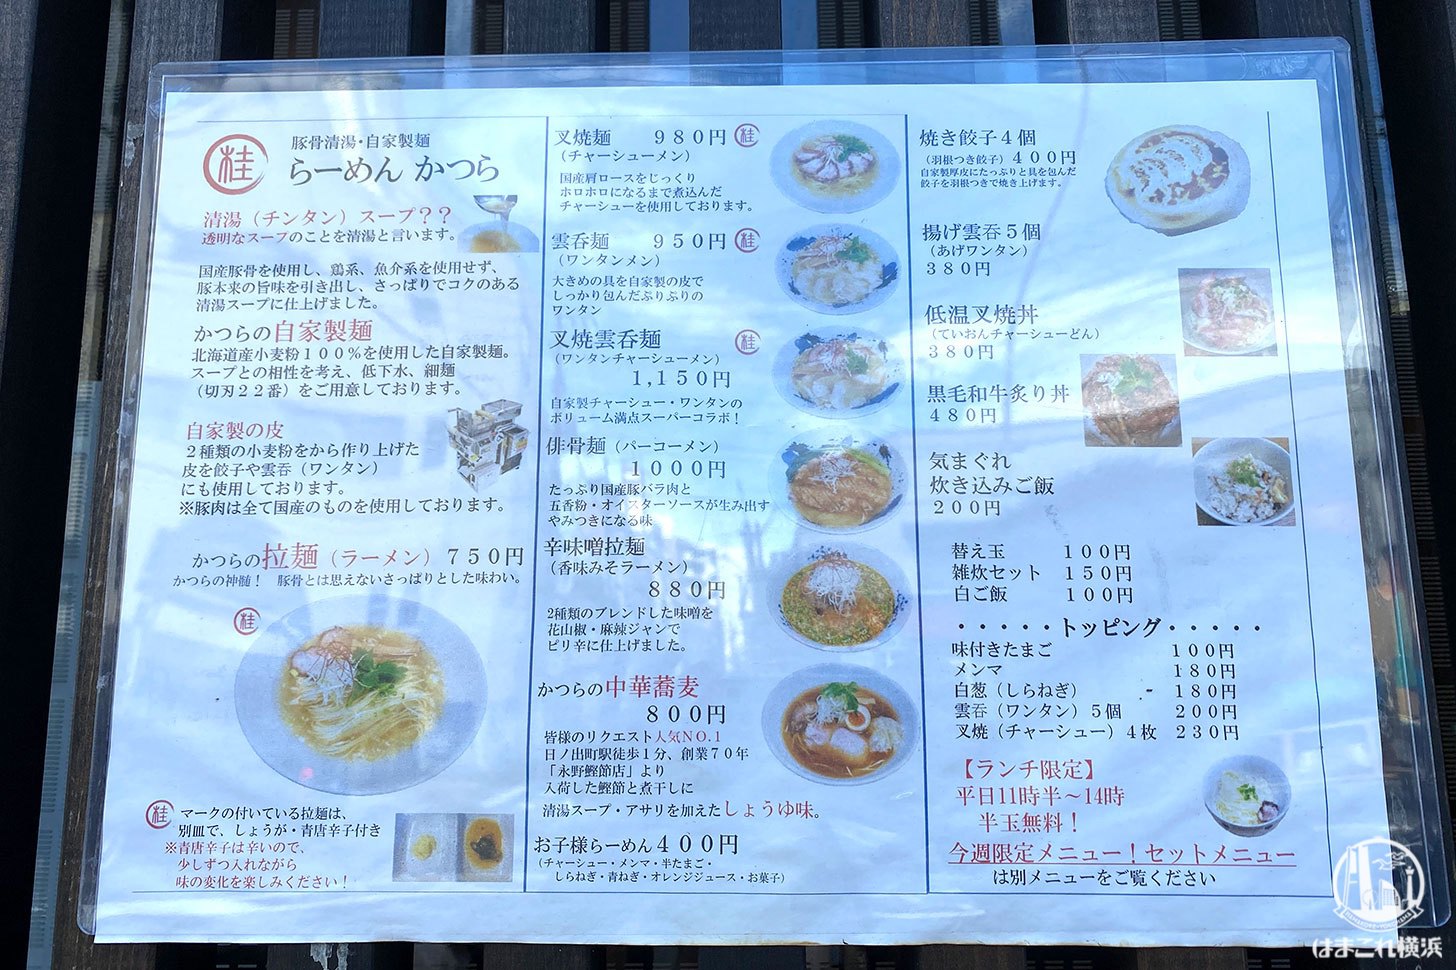 豚骨清湯・自家製麺 かつら メニュー